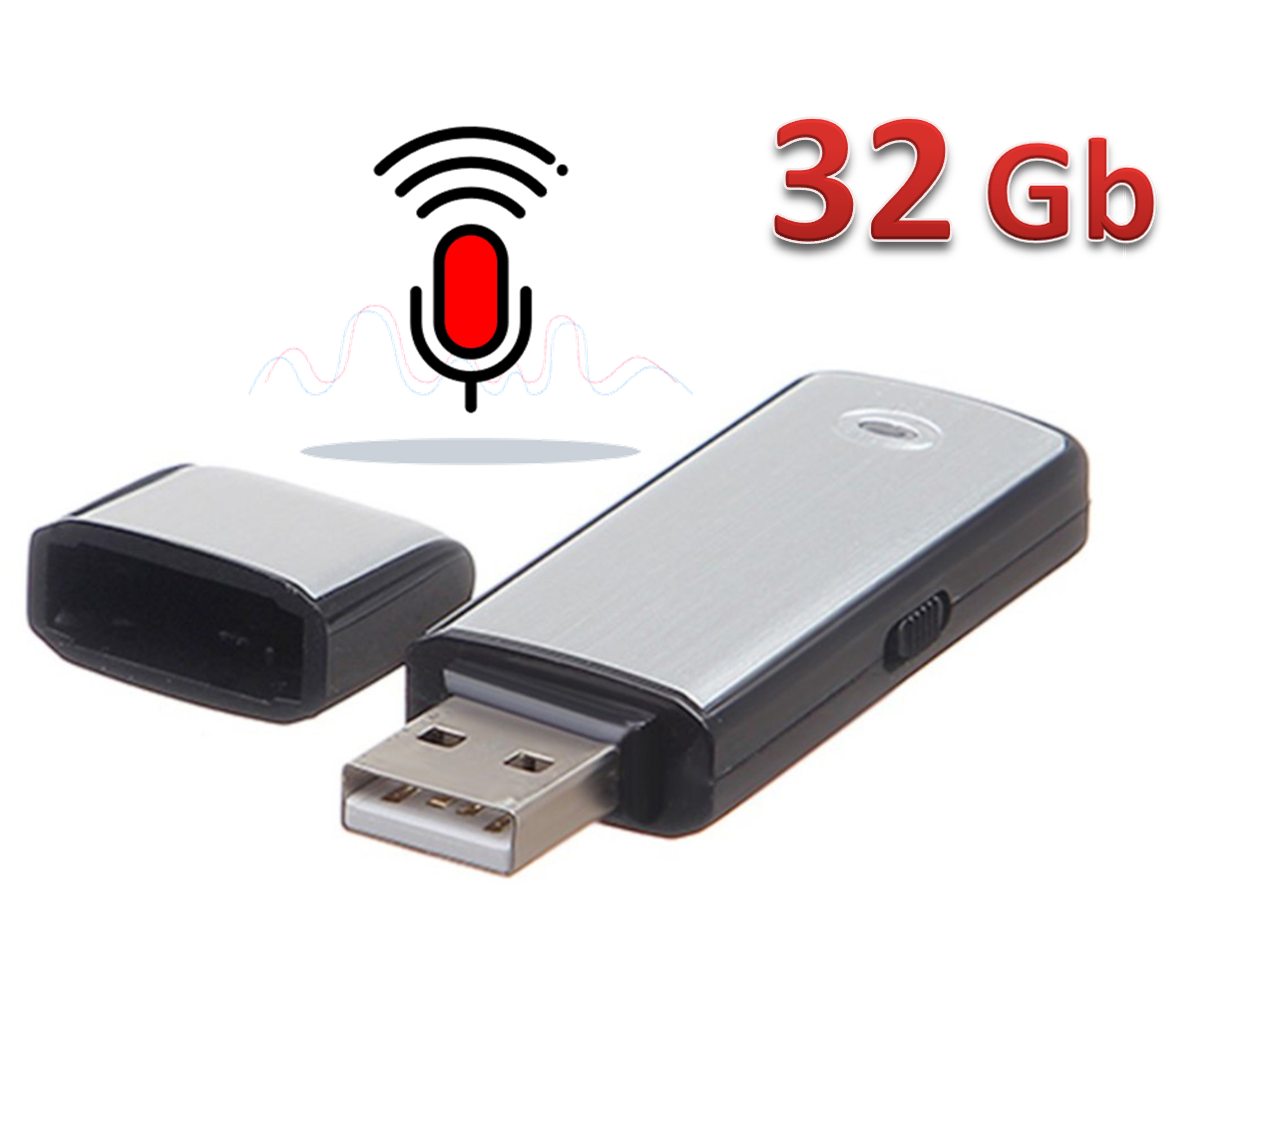 32 Gb USB Flash Bellek Ses Kayıt Cihazı Otg Dönüştürücü ile Telefondan Dinleme